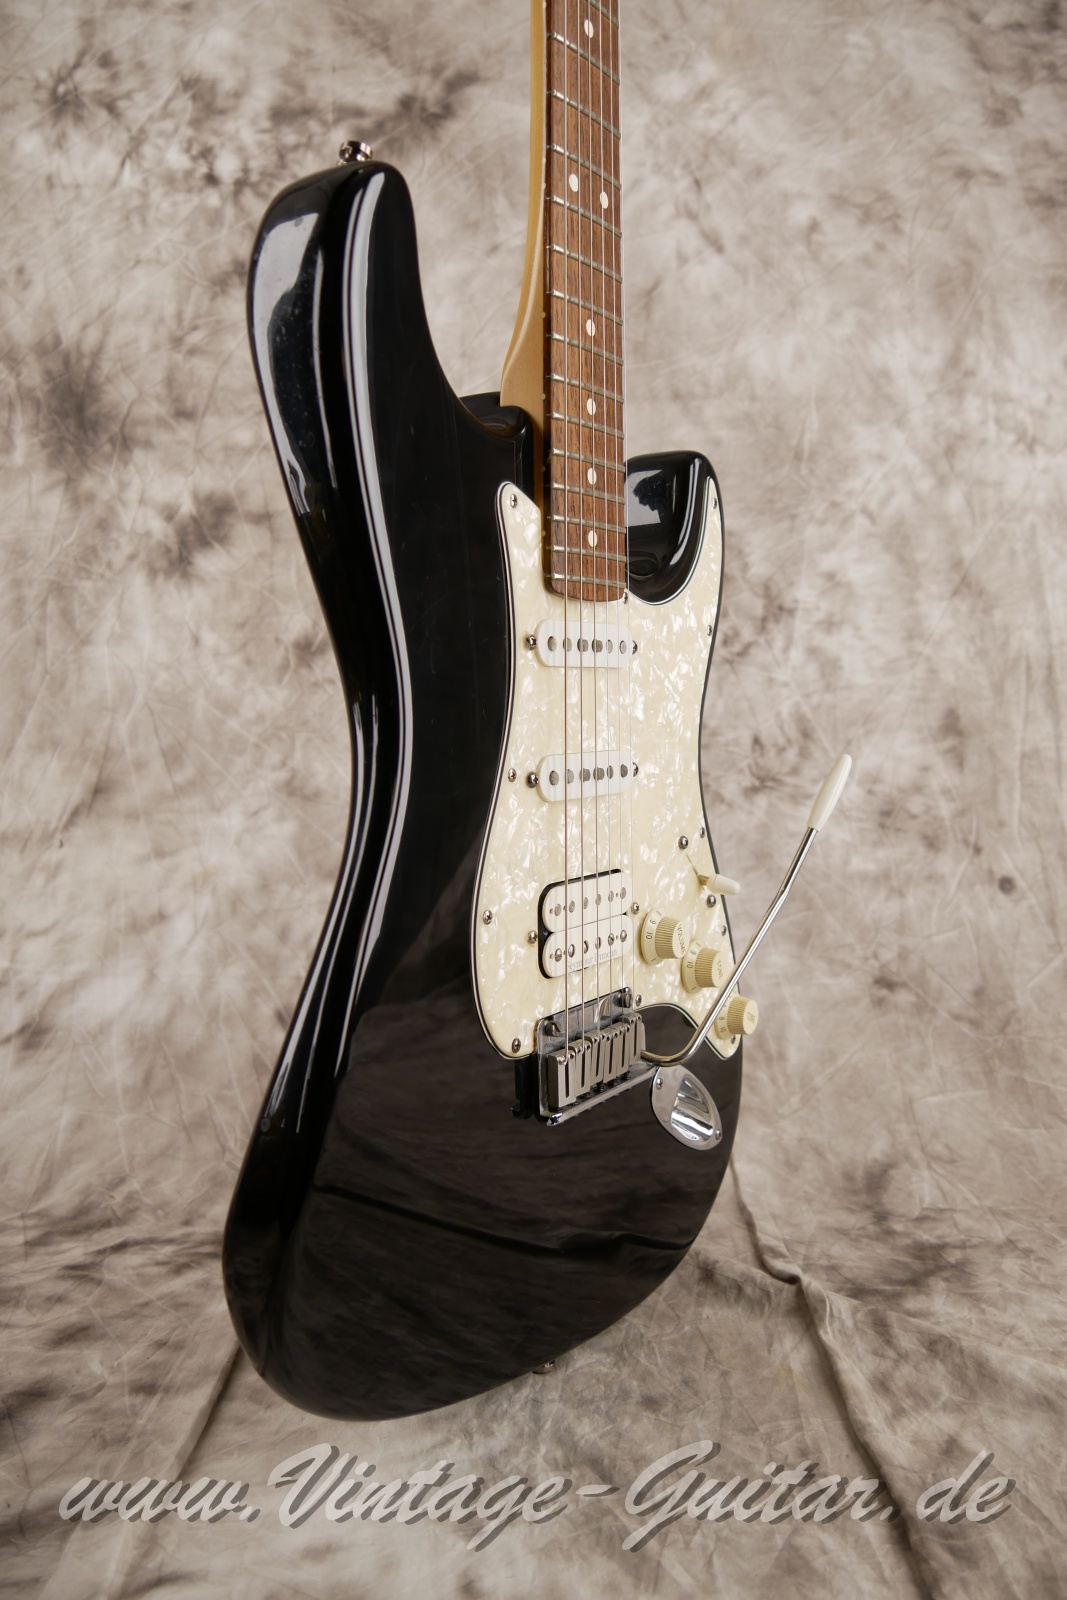 Fender_Stratocaster_US_Lonestar_1997_original_case_black_humbucker-009.jpg